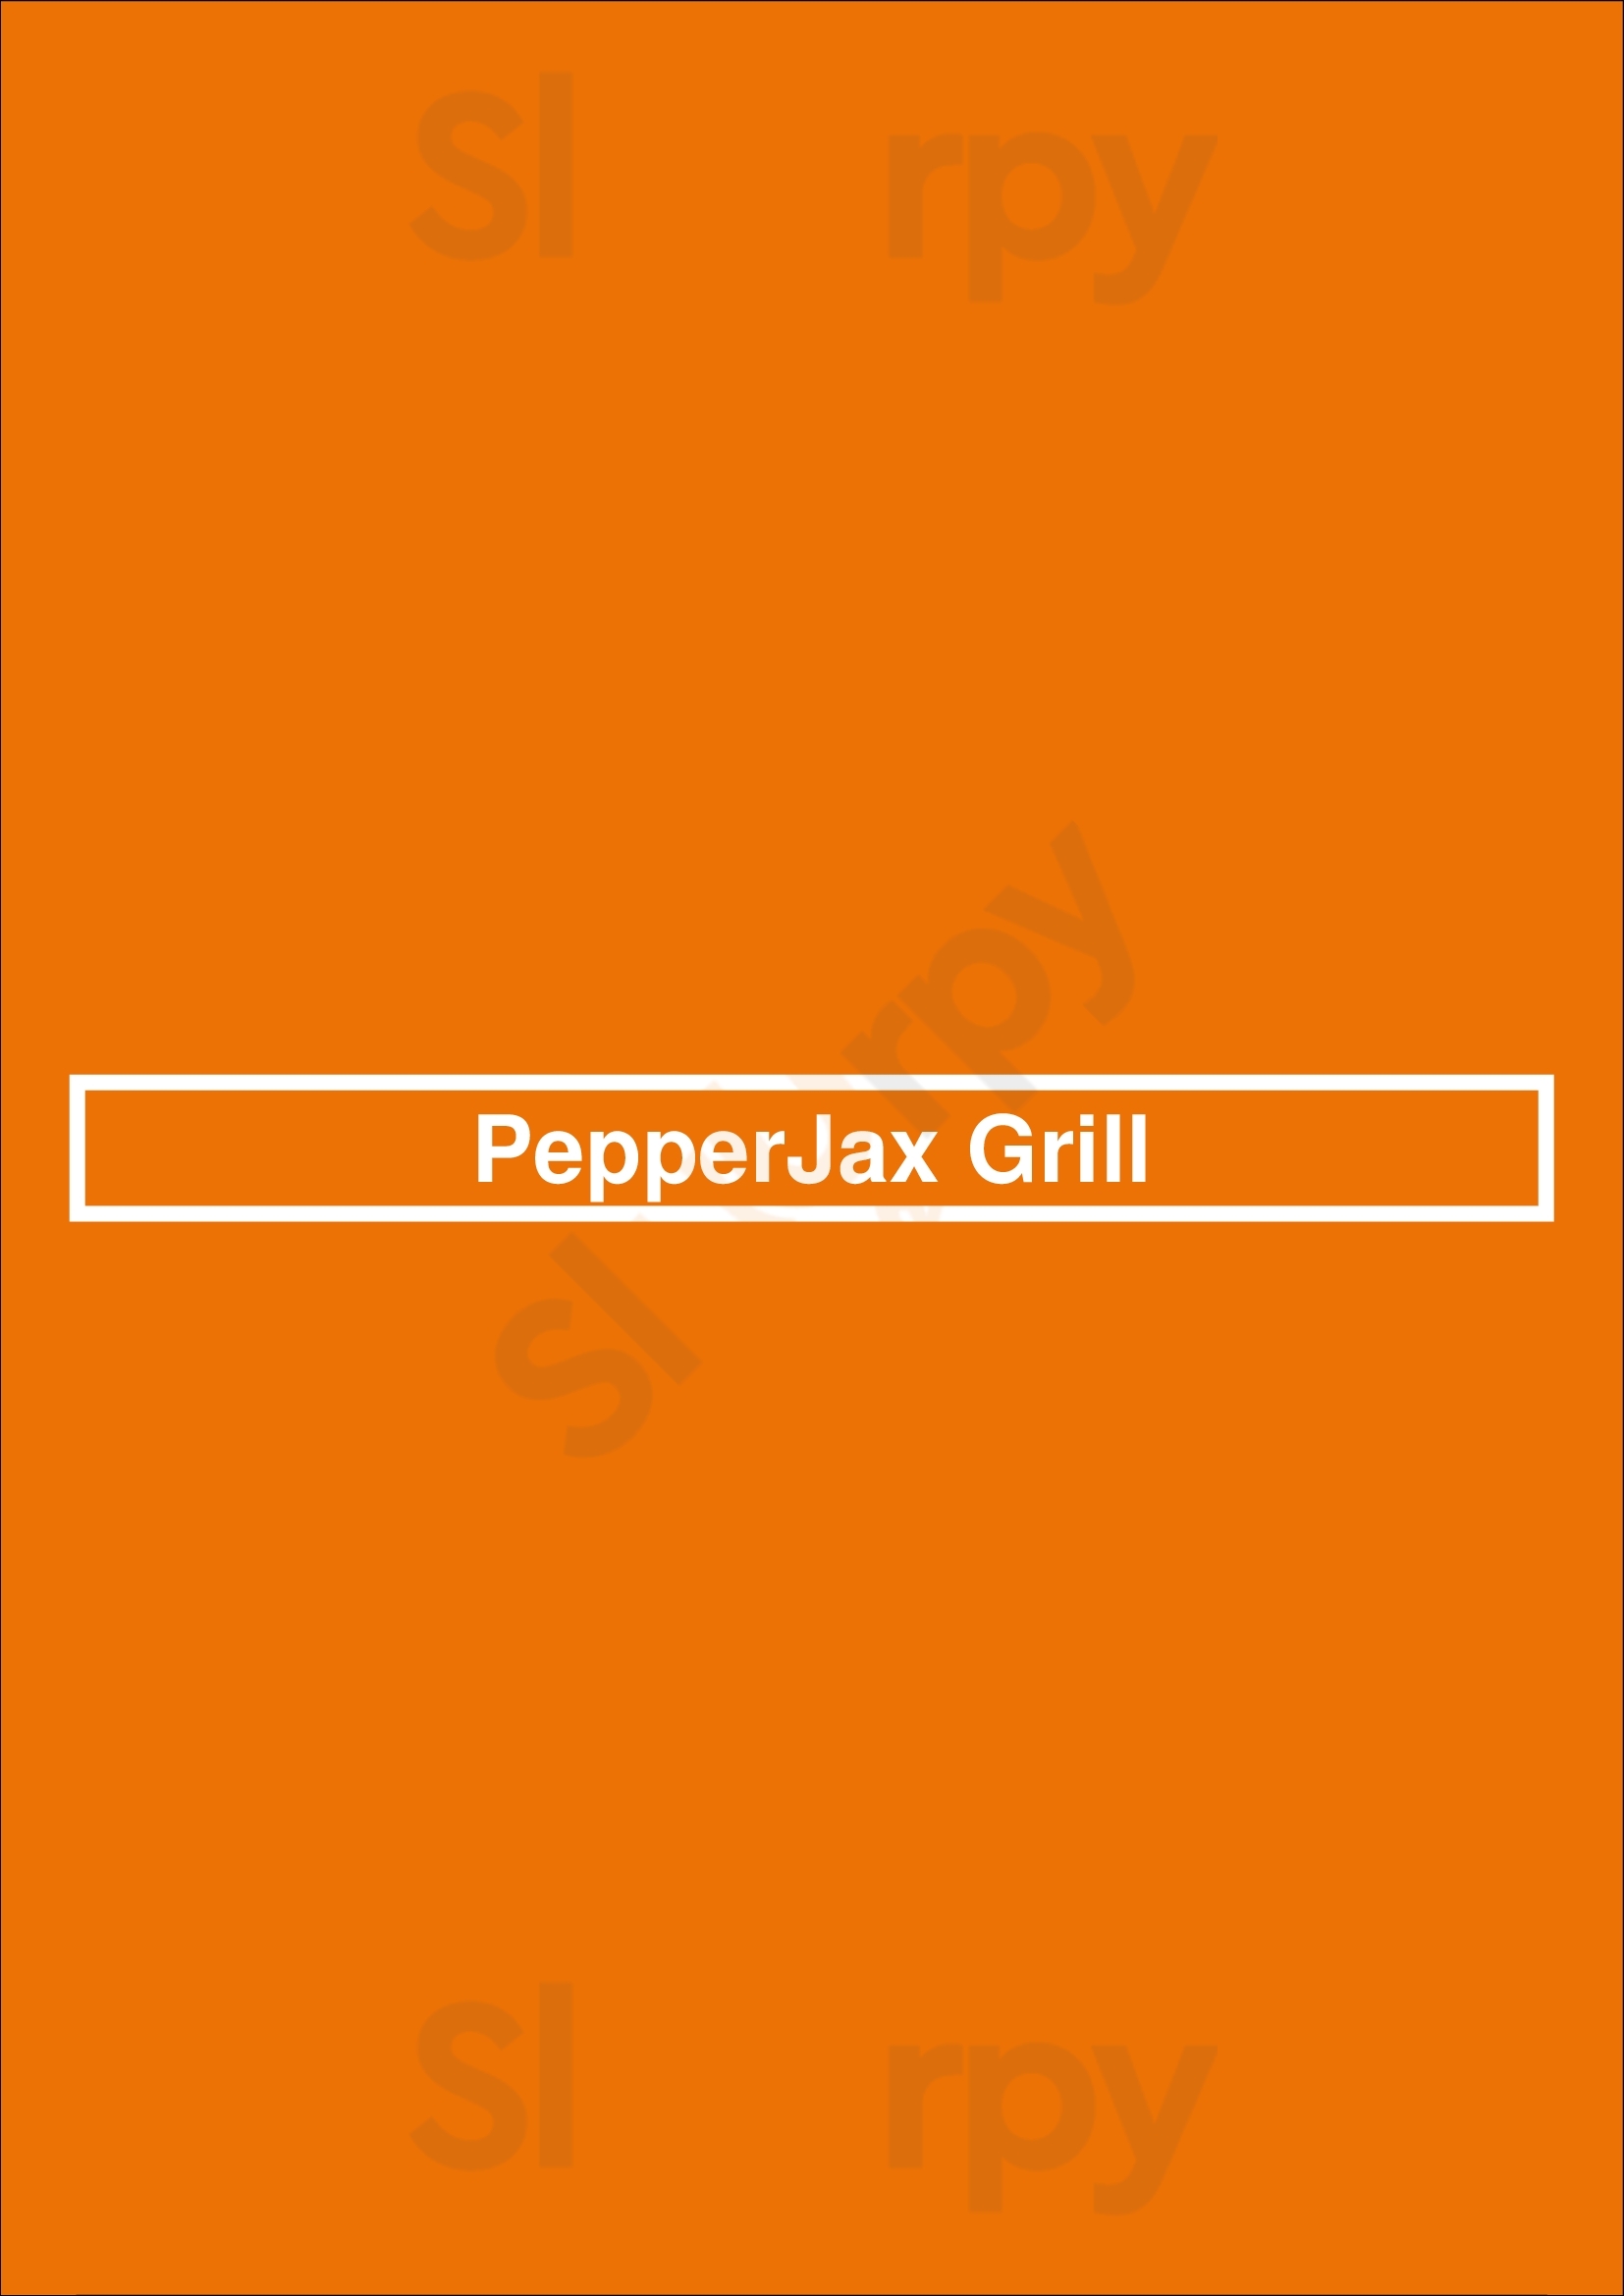 Pepperjax Grill Lincoln Menu - 1